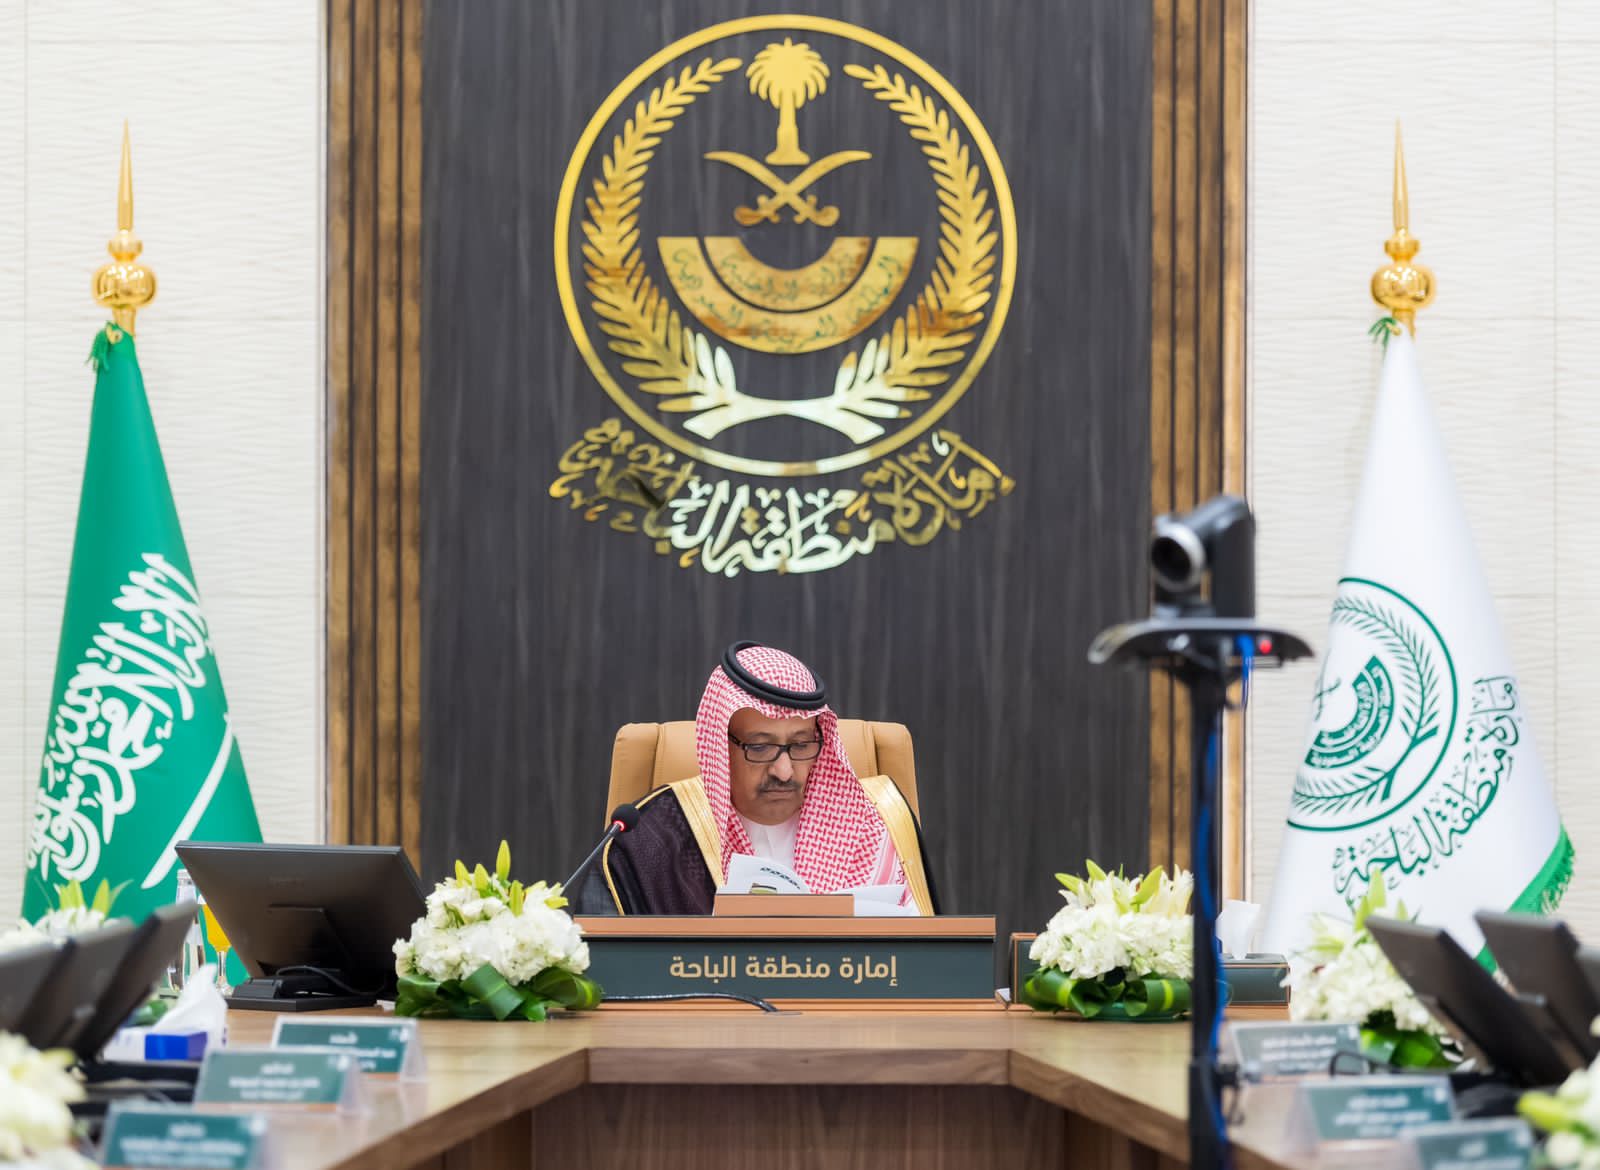 الأمير حسام يرأس اجتماع مجلس جائزة الباحة للإبداع والتميز